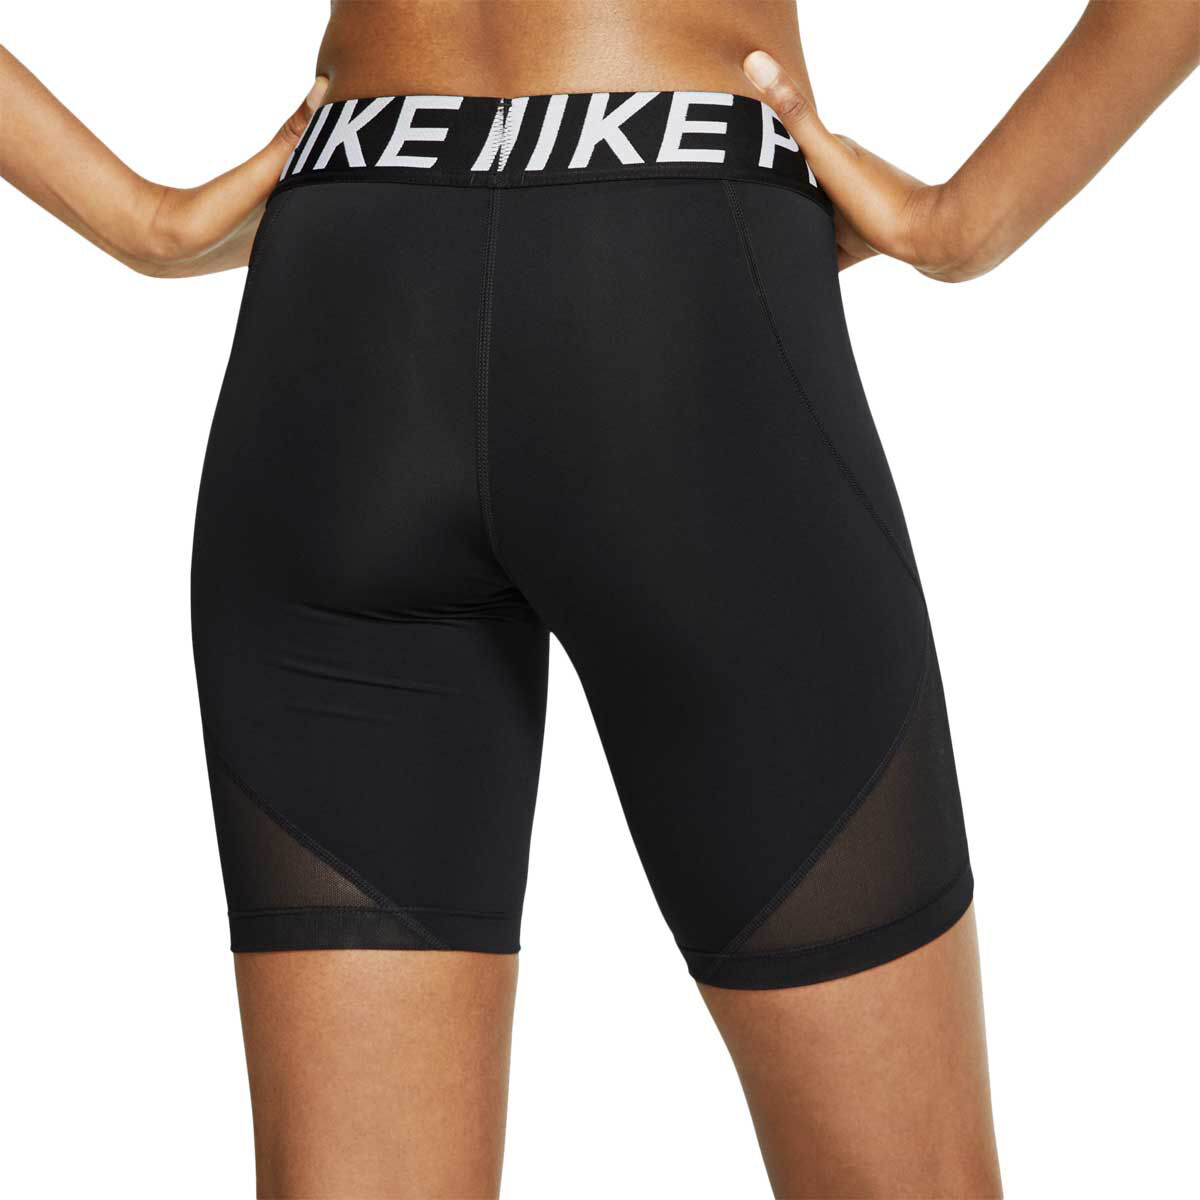 nike spandex biker shorts